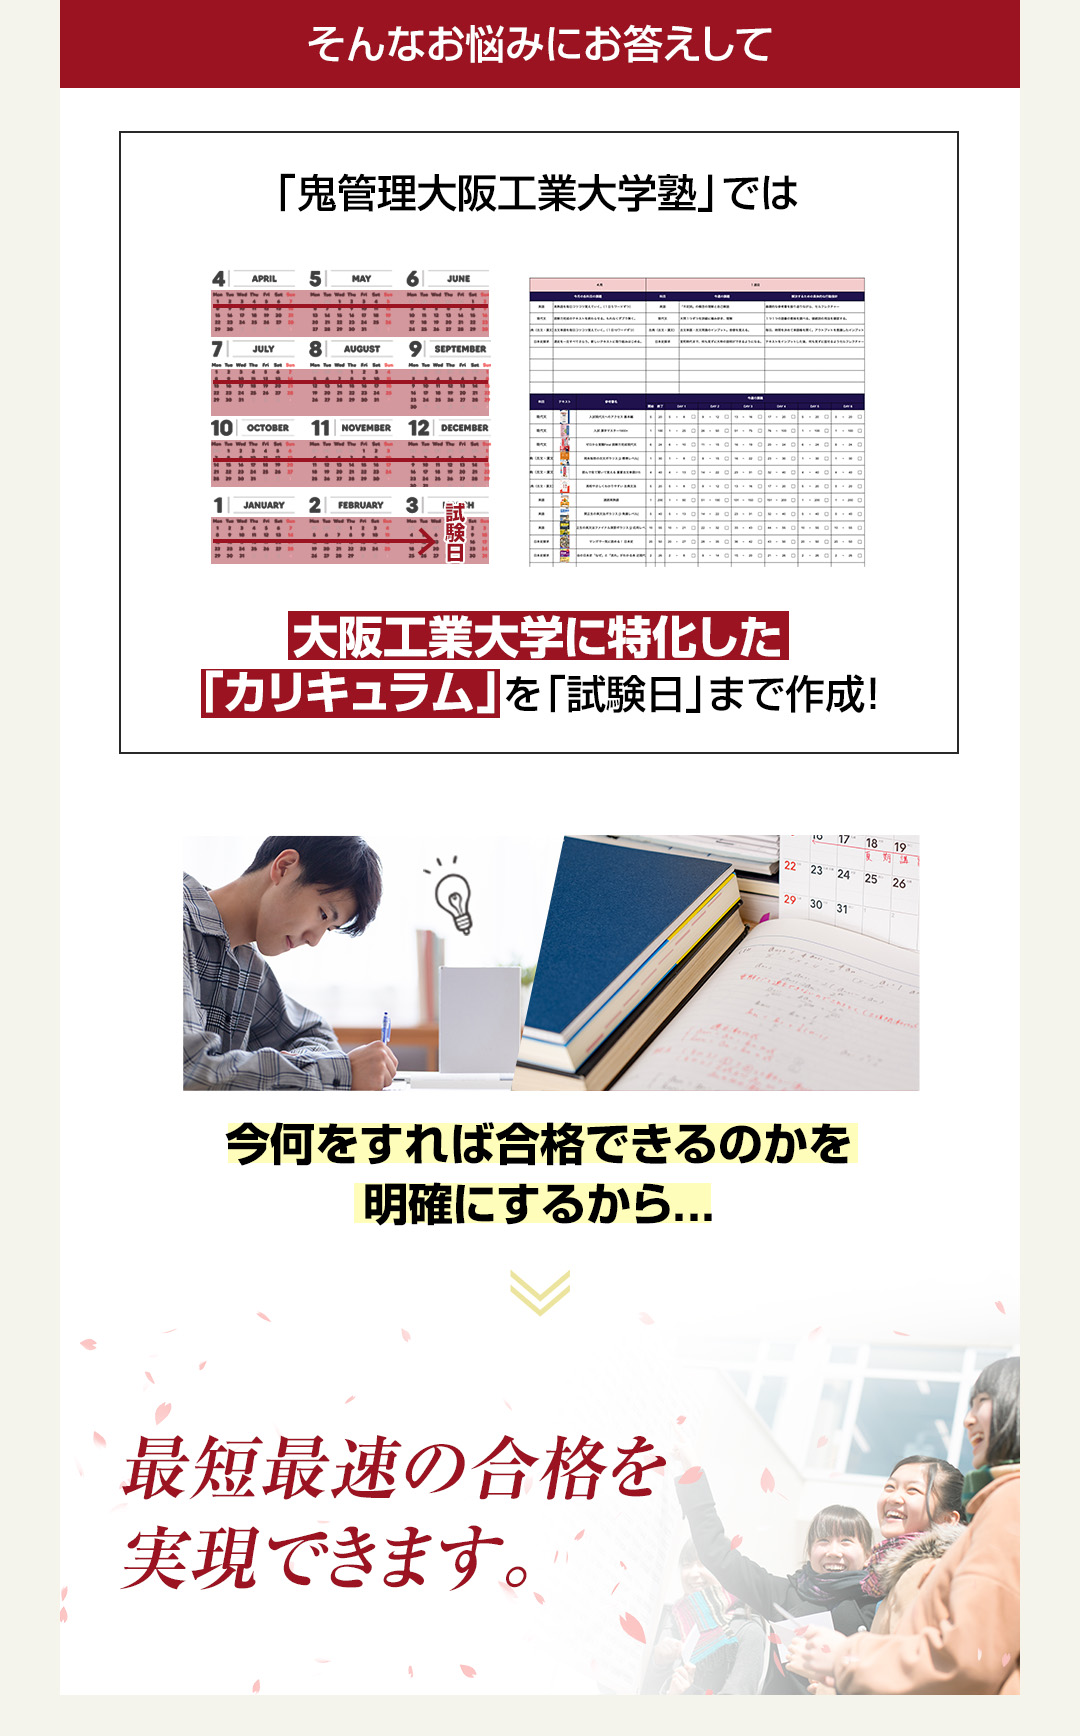 「鬼管理大阪工業大学塾」では大阪工業大学に特化した「カリキュラム」を「試験日」まで作成